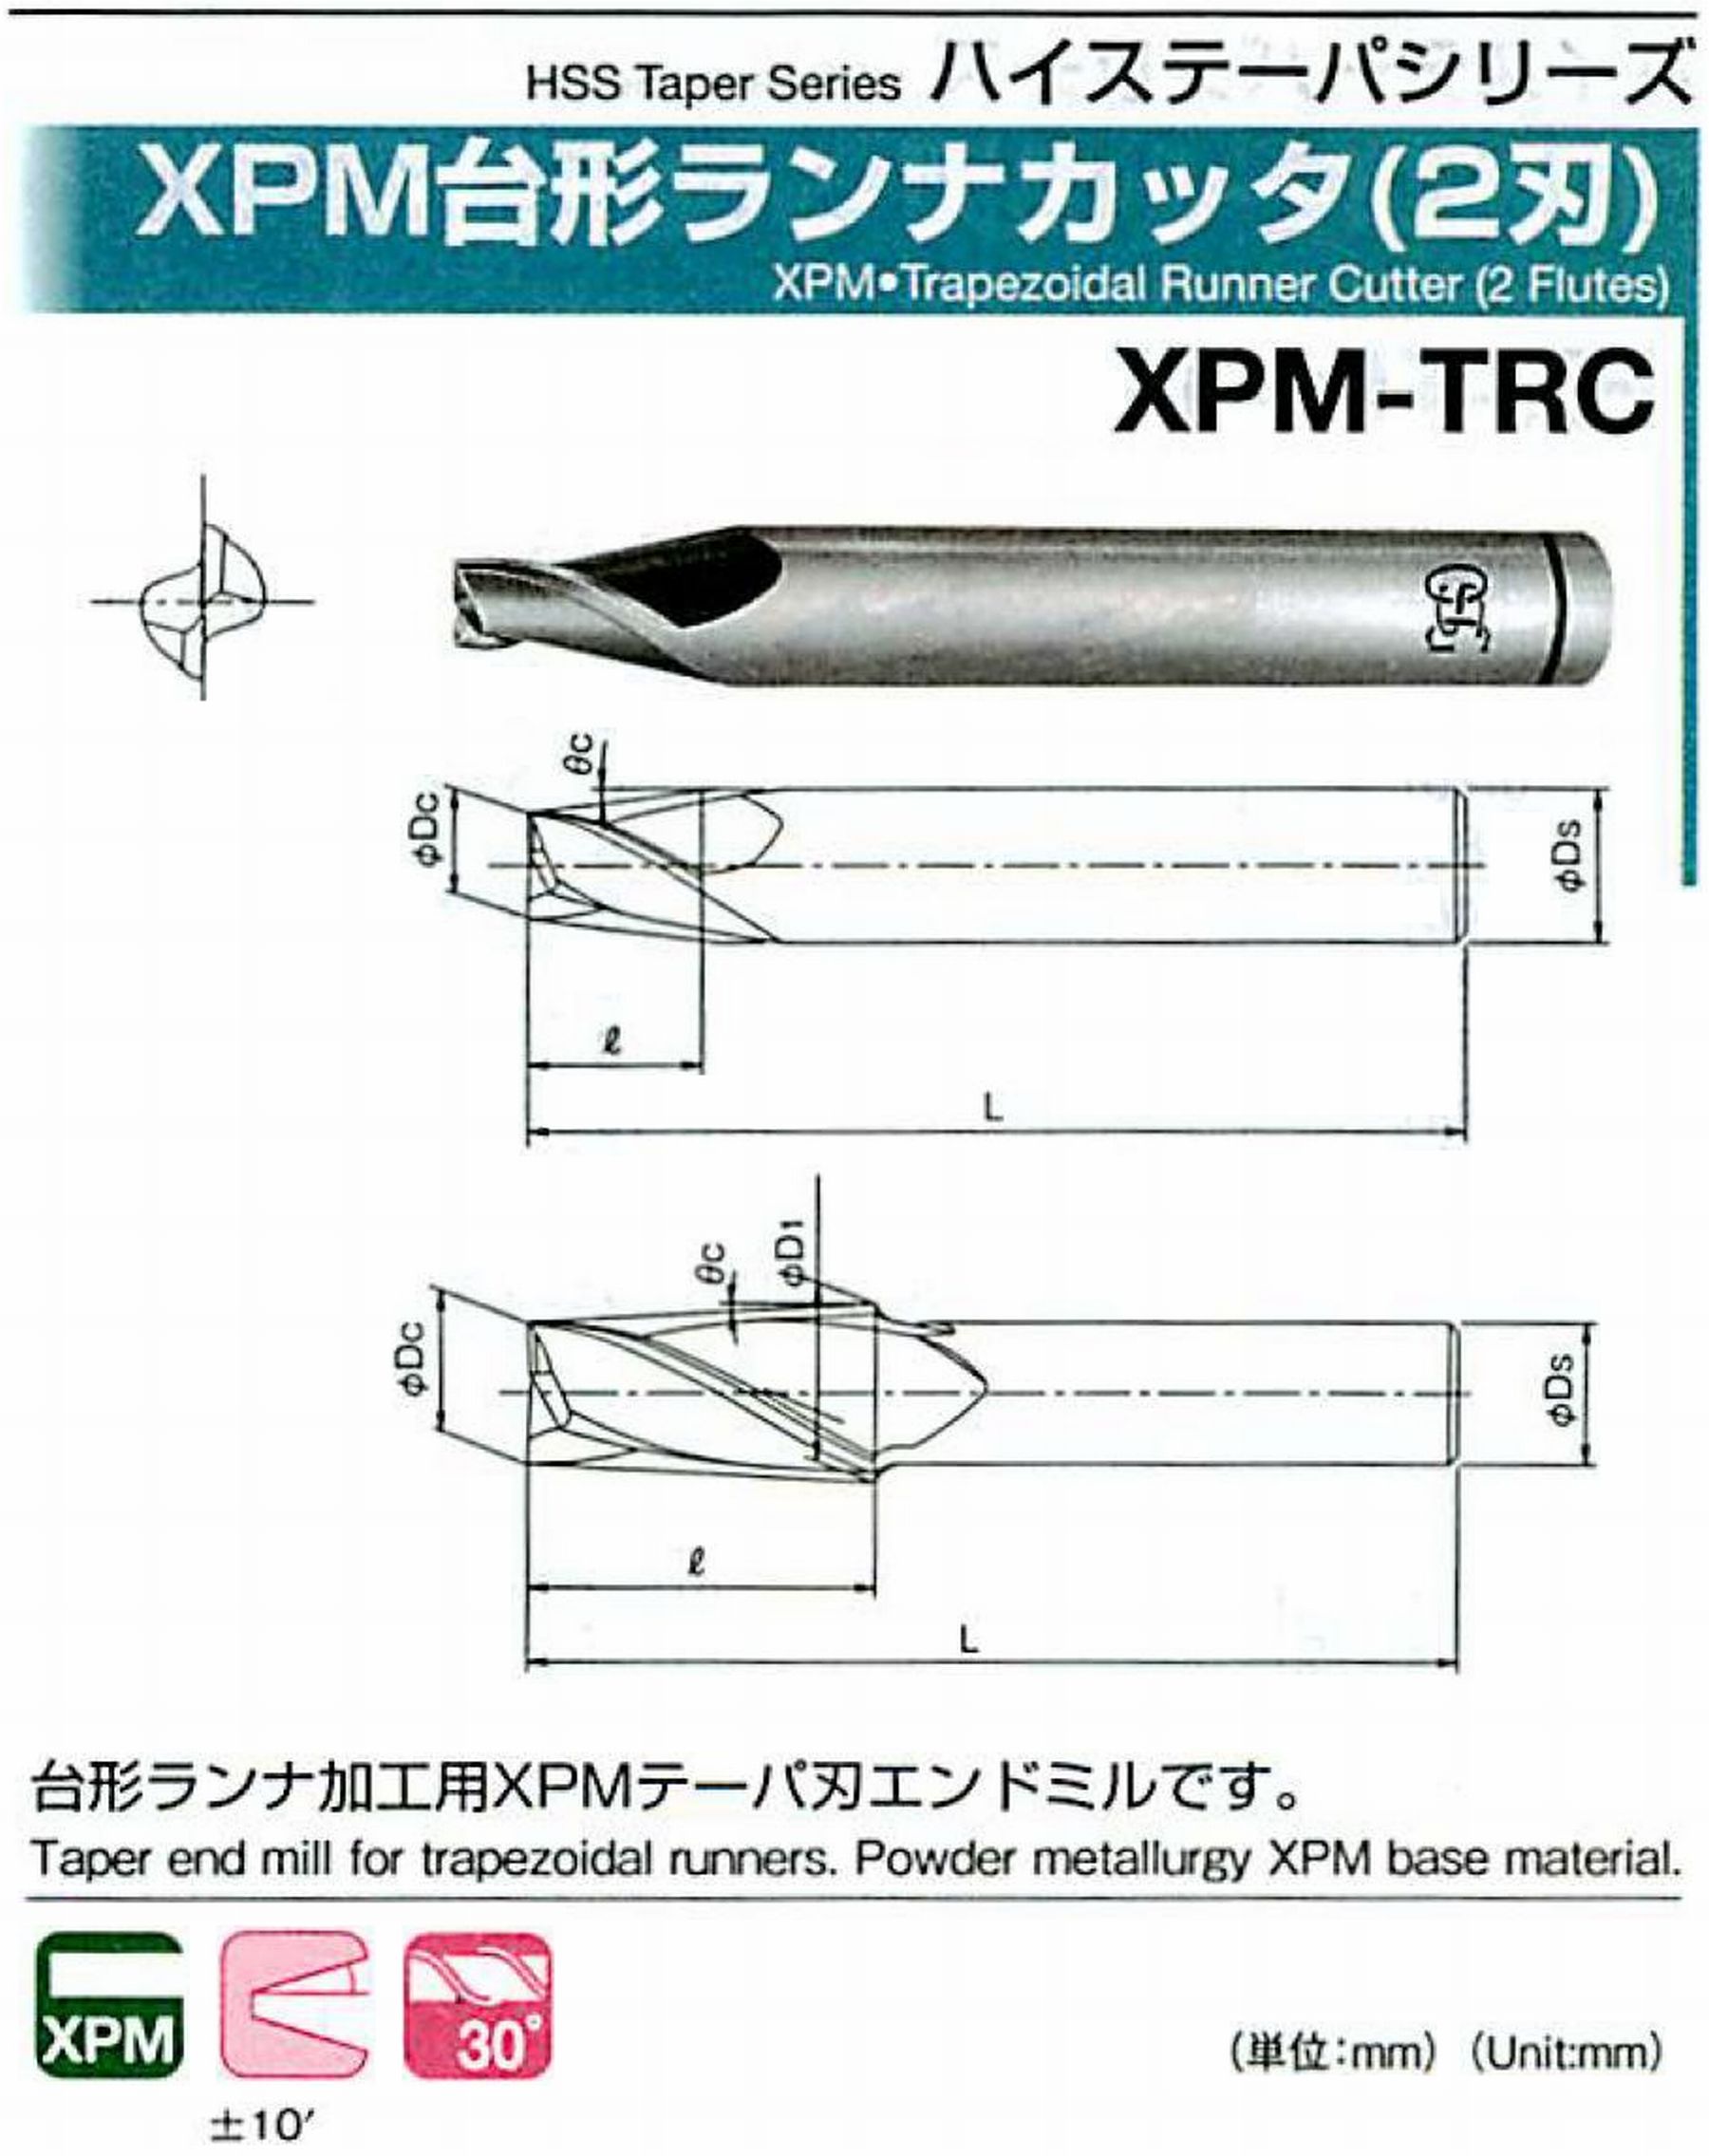 オーエスジー/OSG XPM台形ランナカッタ(2刃) XPM-TRC 外径×刃部テーパ半角6×12° 全長75 刃長12 シャンク径12mm